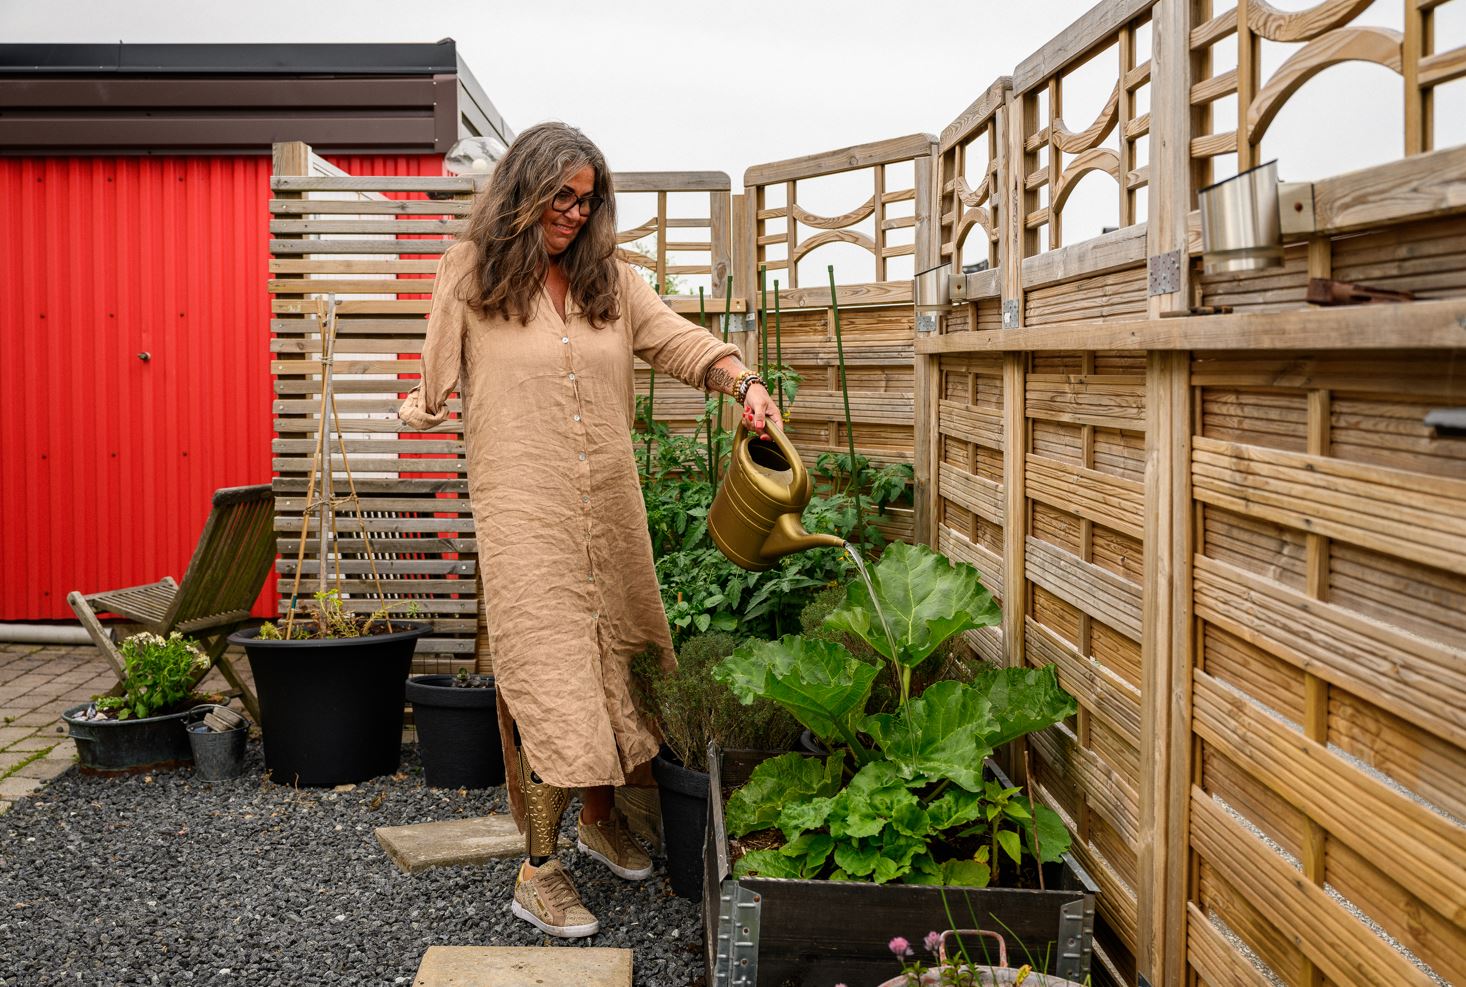 Kvinna med guldkanna vattnar prunkande rabarber som växer i en odlingslåda, i bakgrunden skymtar tomatplantor